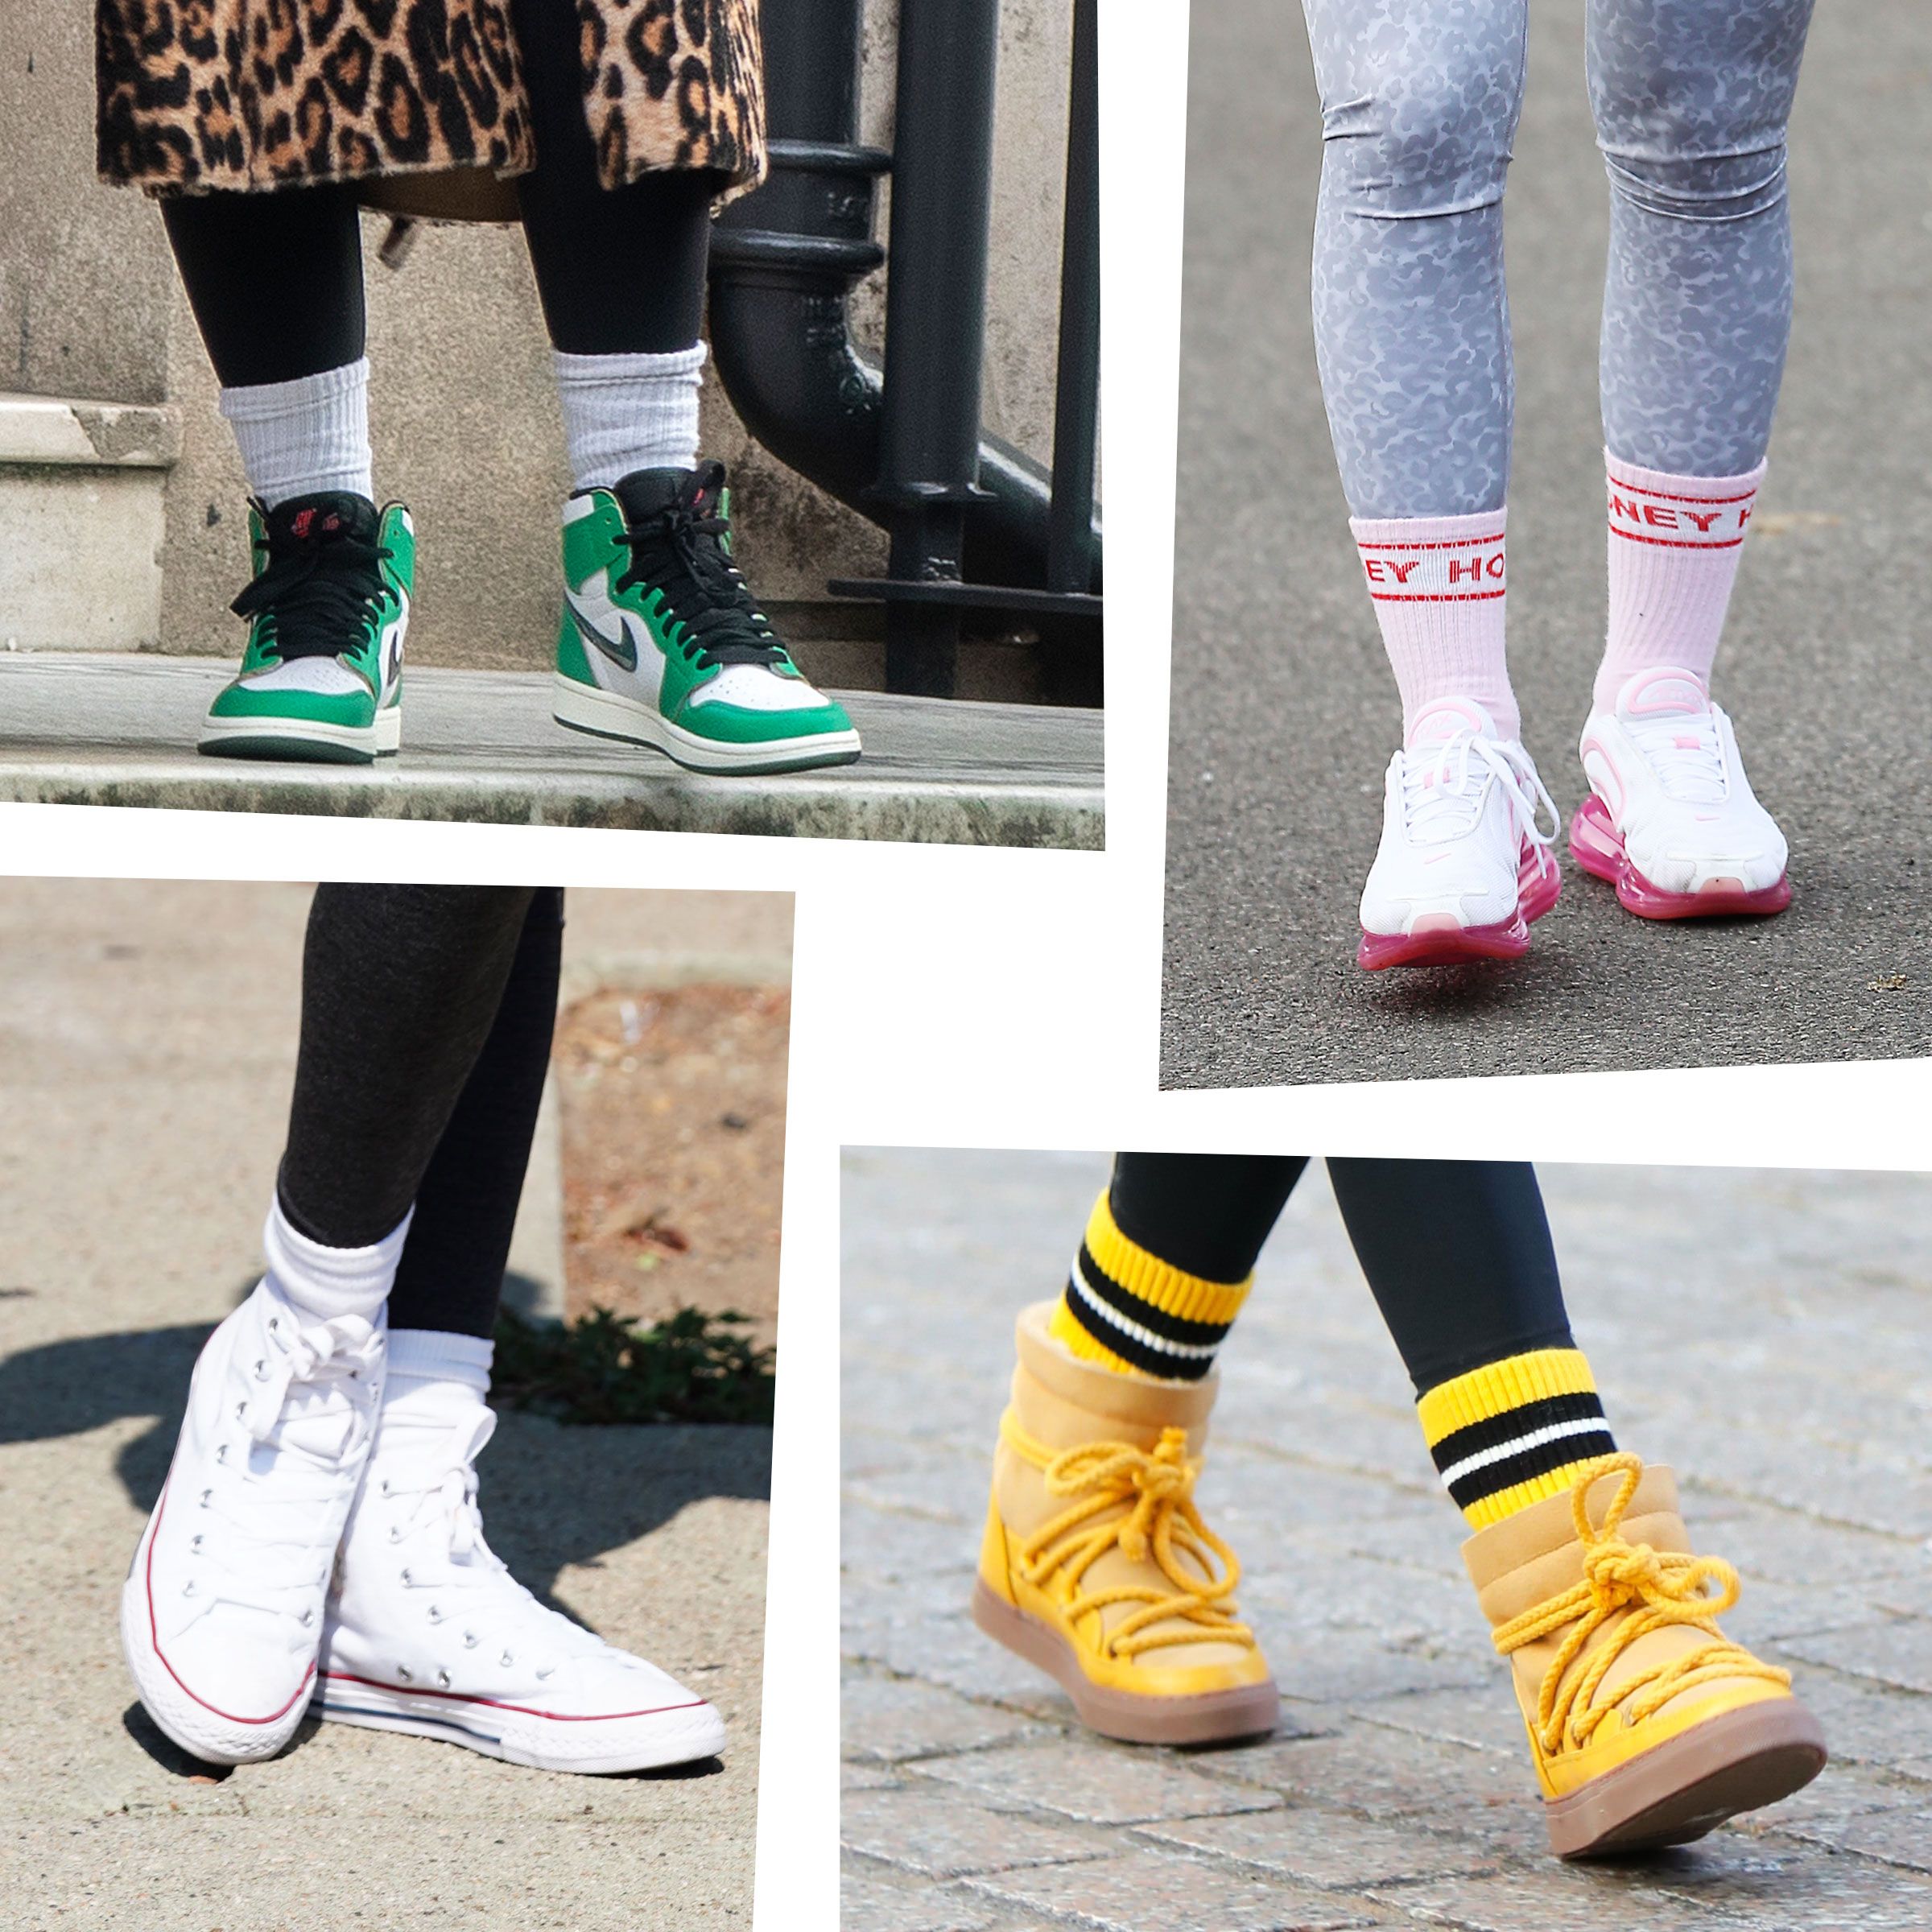 Kreuzung Tier Gegenstand high school girls in sneakers and ankle socks ...